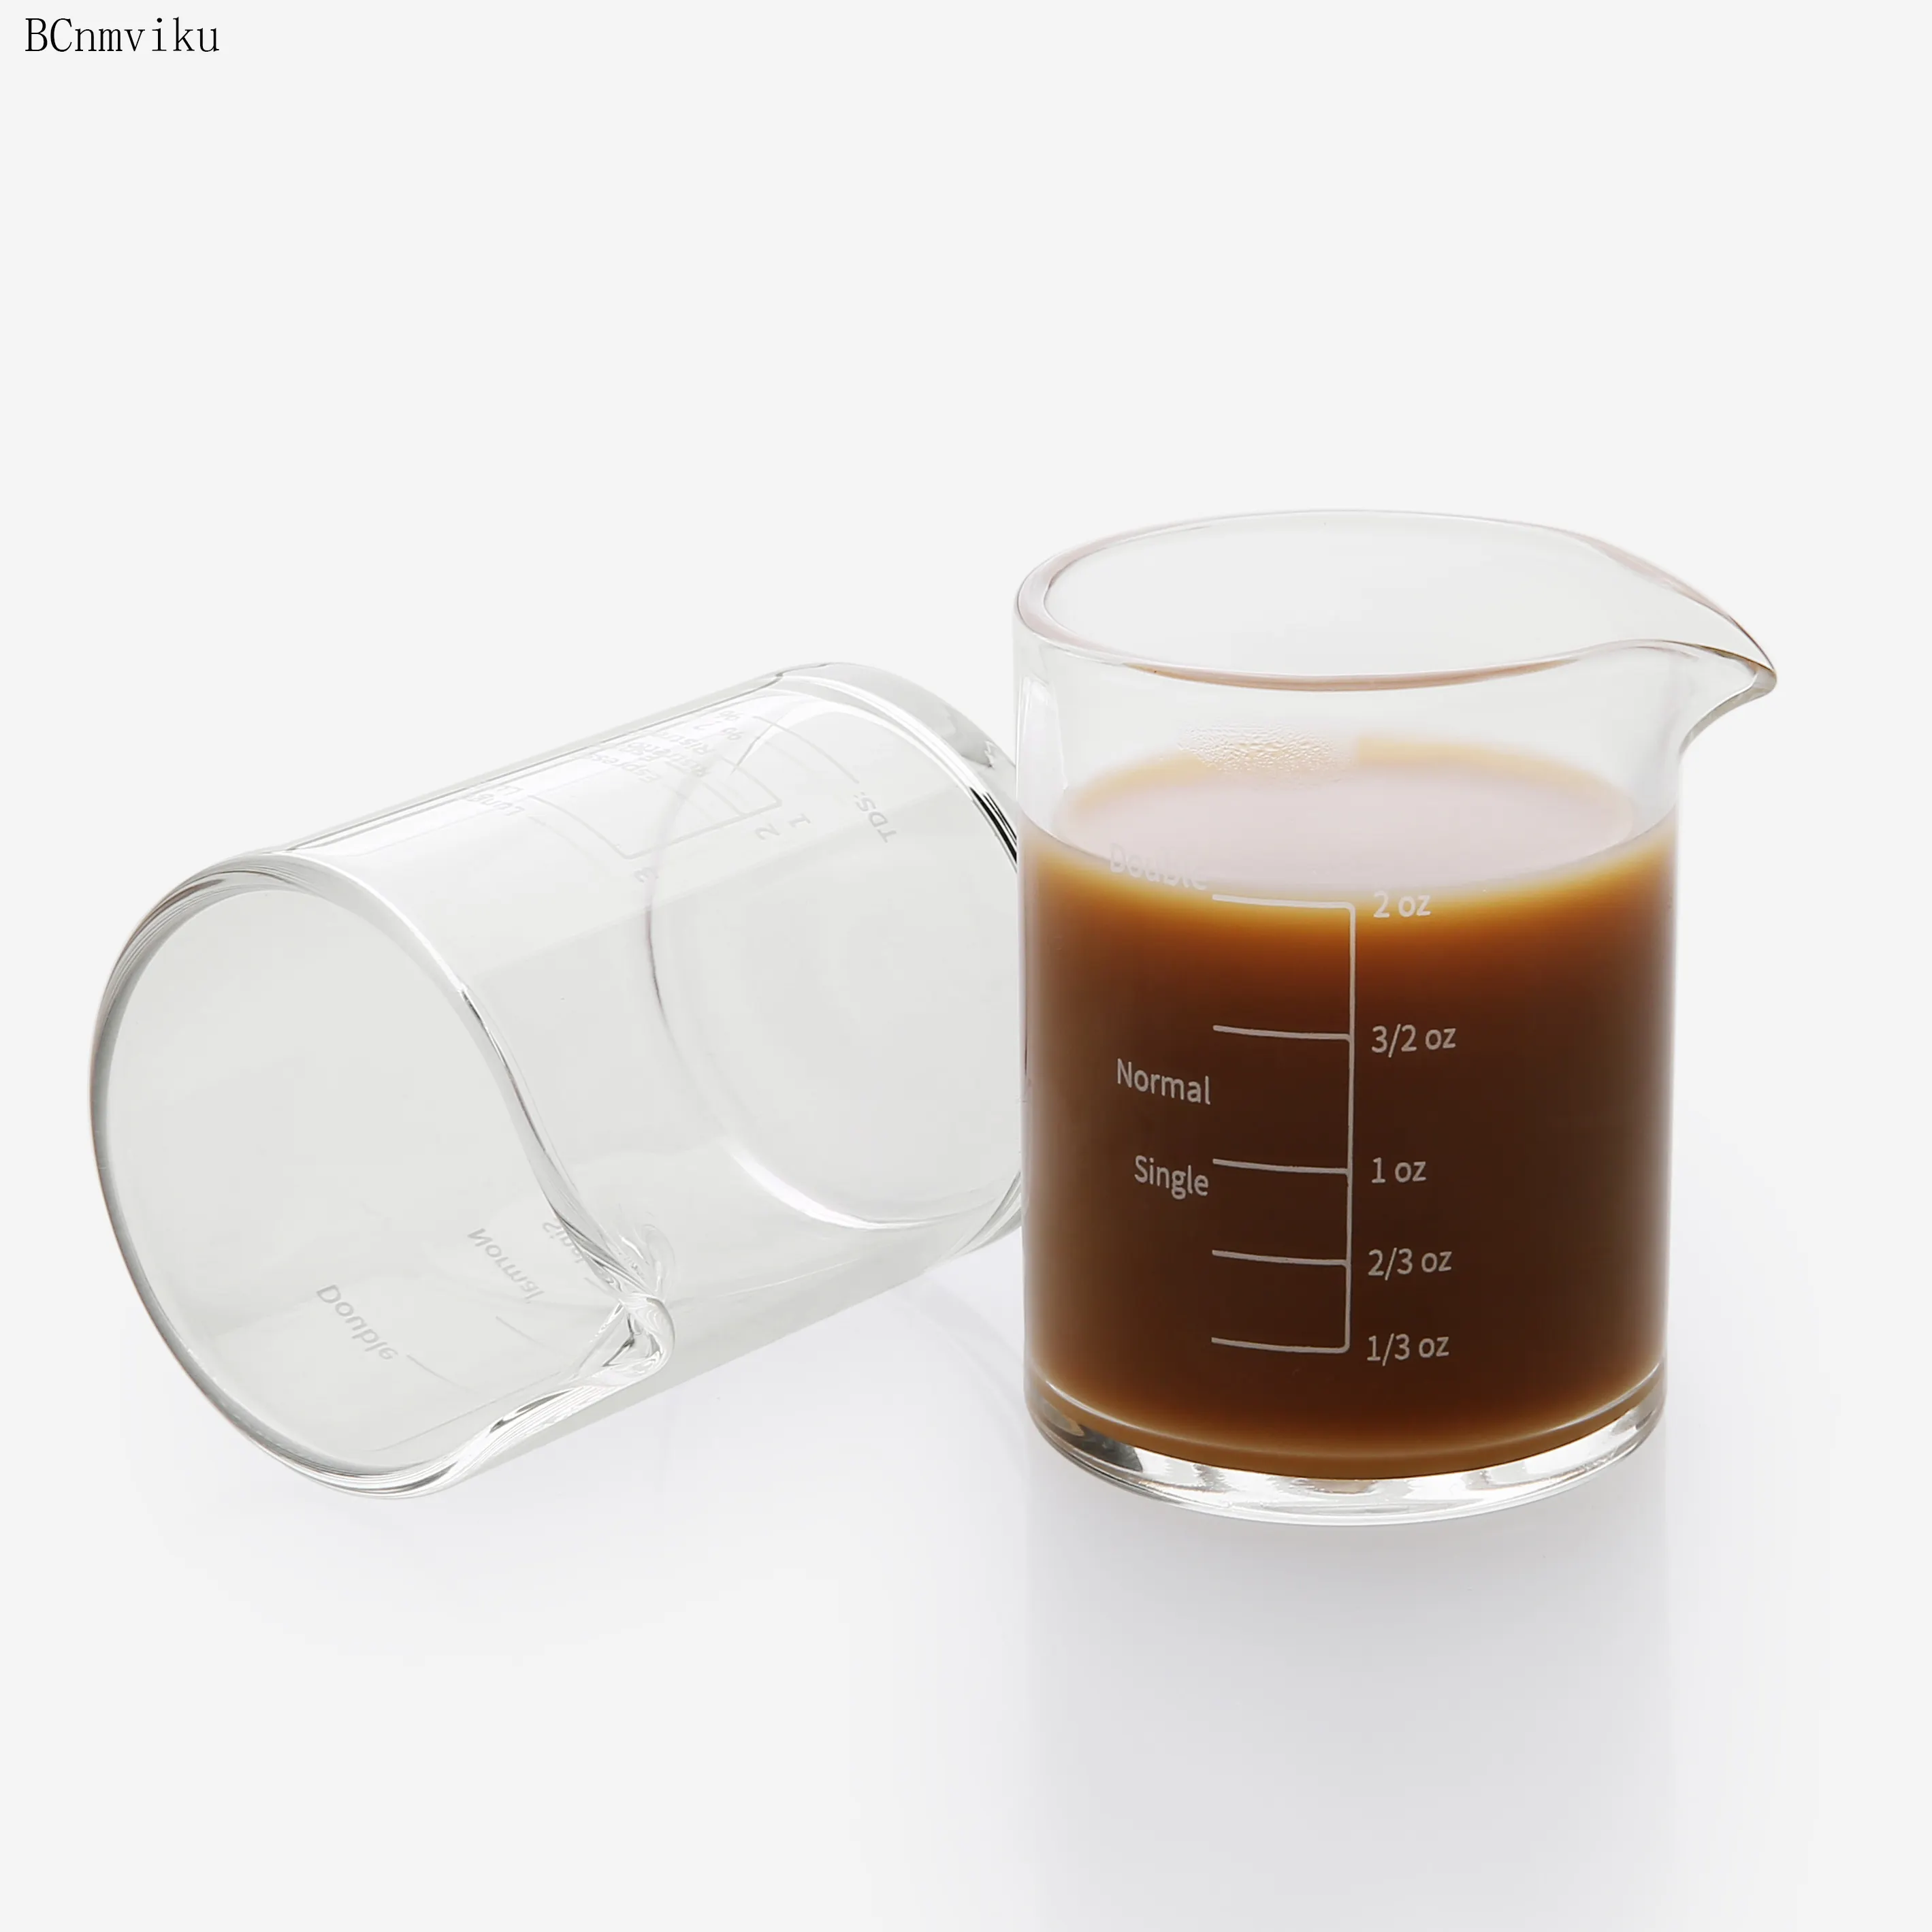 BCnmviku 에스프레소 샷 유리 측정 우유 컵 단일 주둥이 측정 트리플 투수 우유 컵 에스프레소 샷 유리 규모